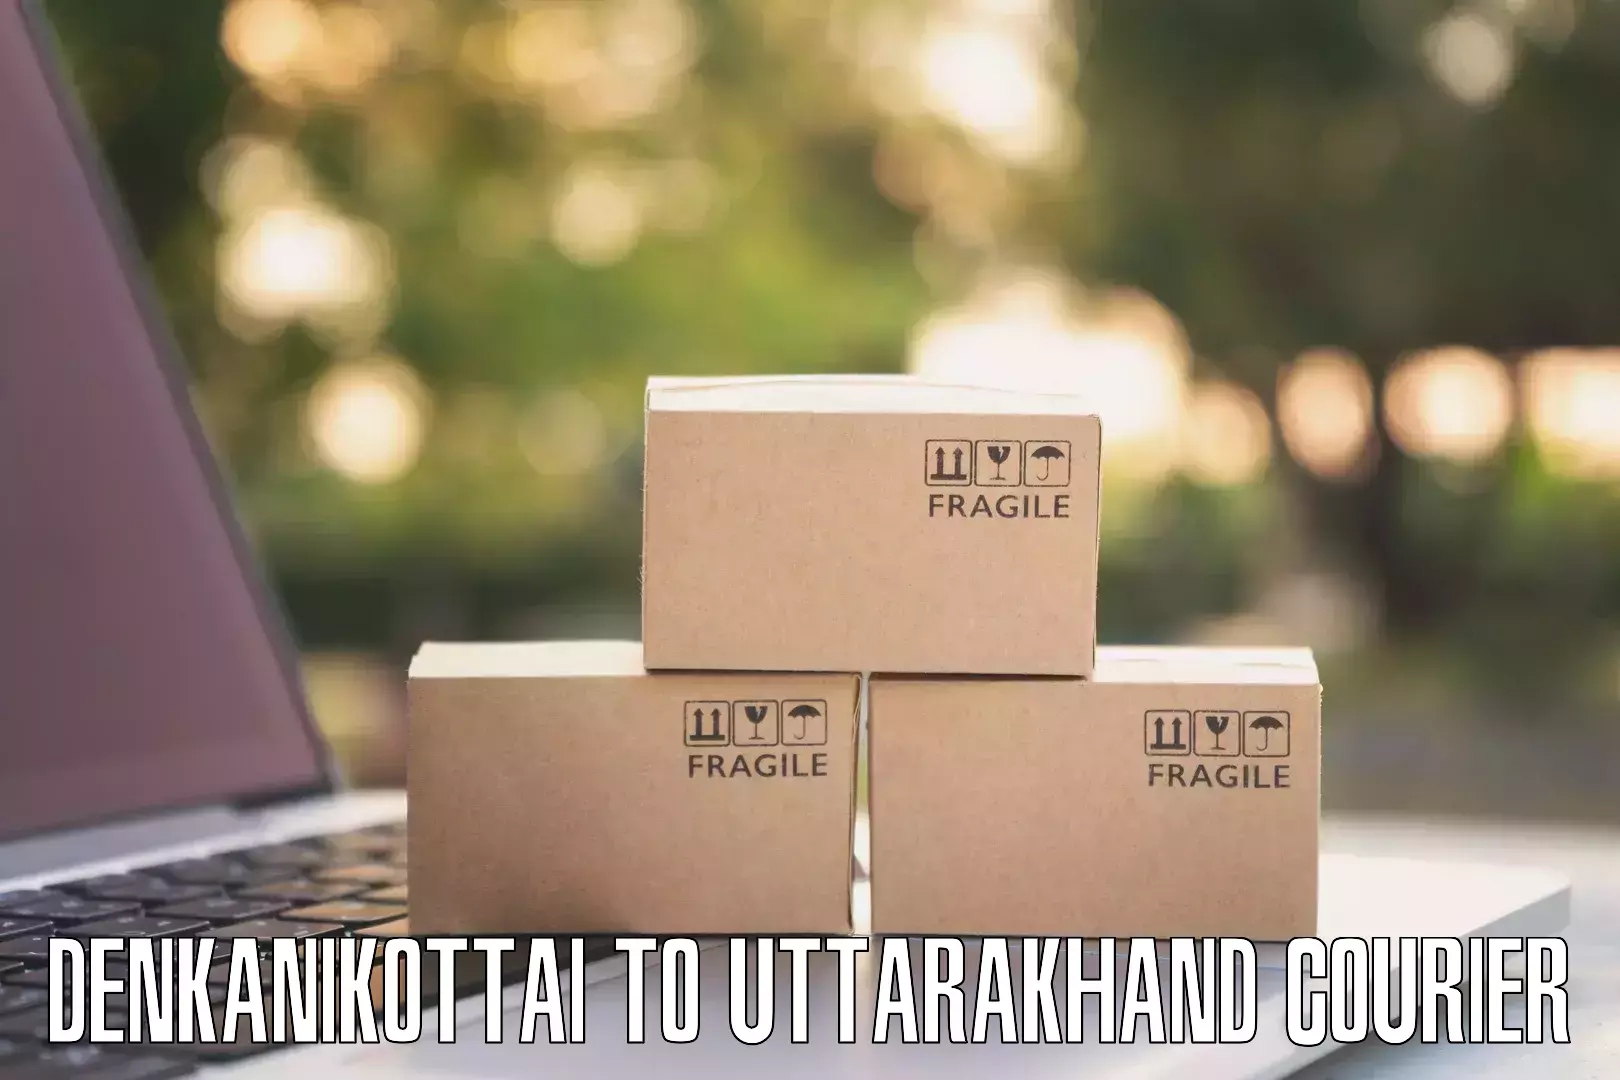 Sustainable shipping practices Denkanikottai to Uttarakhand